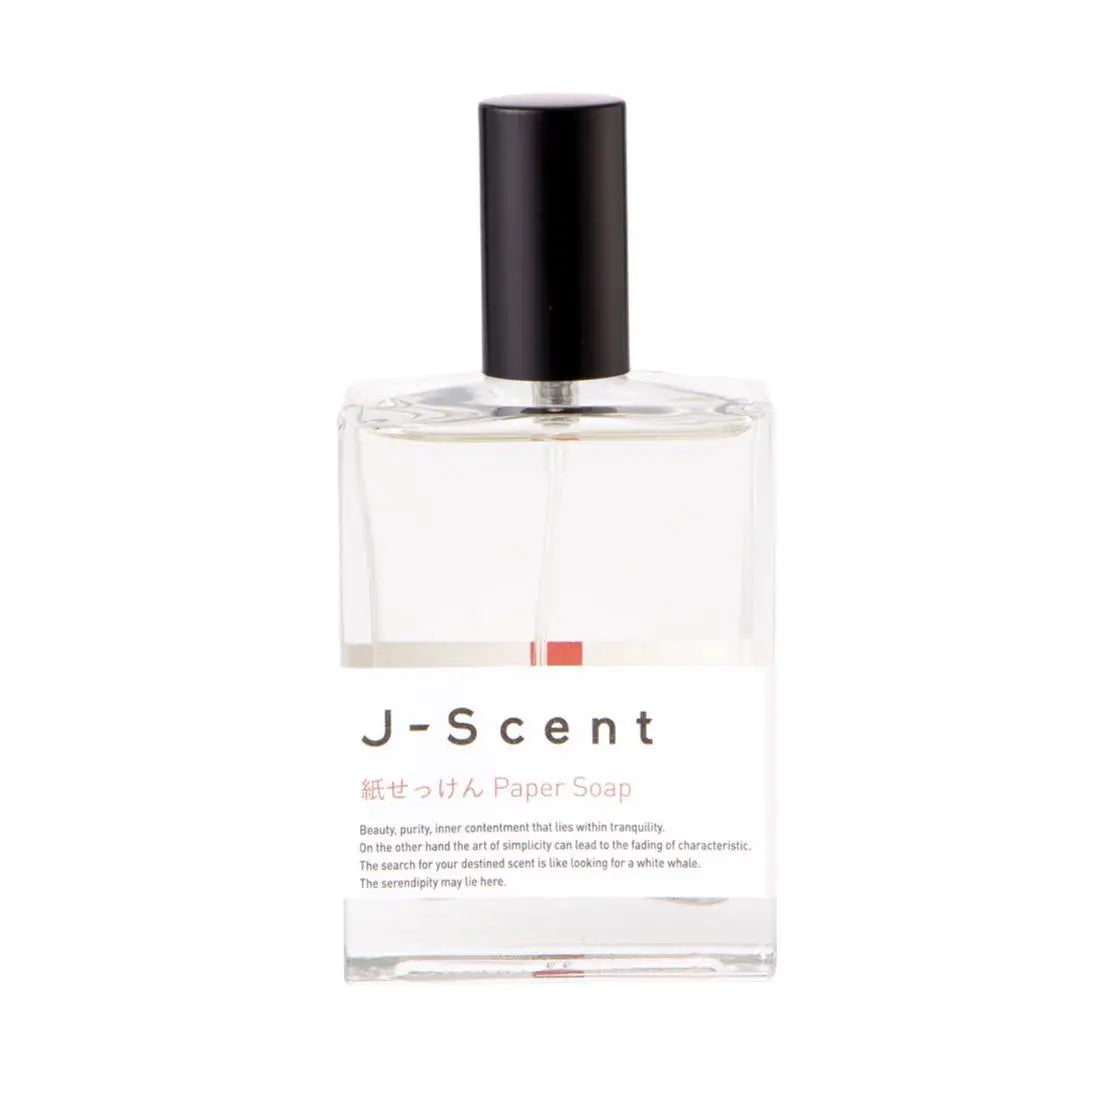 J-scent Paper Soap - 50 ml